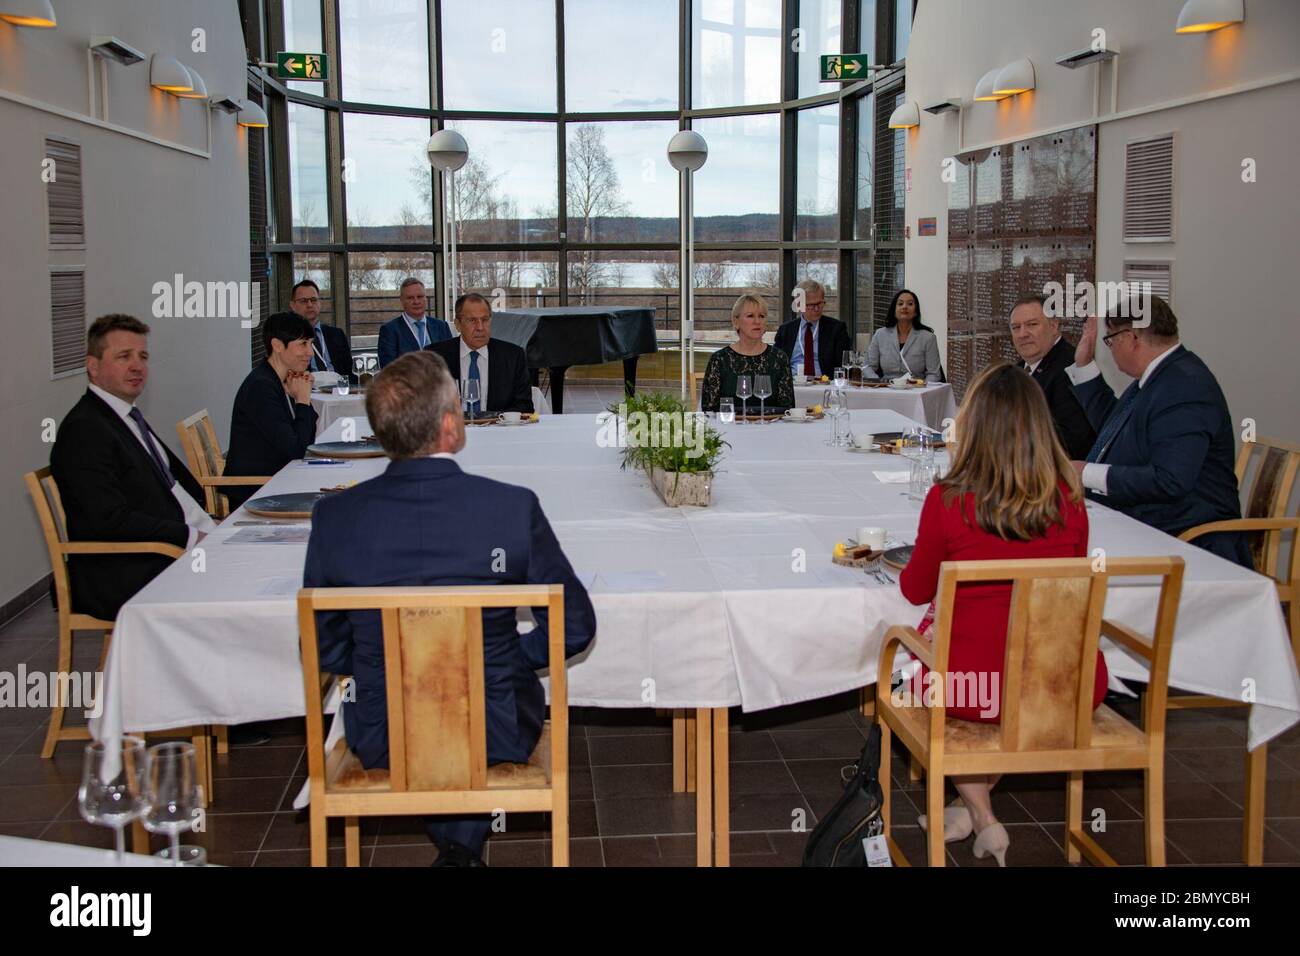 Il Segretario Pompeo alla cena di lavoro dei Ministri del Consiglio Artico il Segretario di Stato Michael R. Pompeo partecipa alla cena di lavoro dei Ministri del Consiglio Artico, a Rovaniemi, in Finlandia, il 6 maggio 2019. Foto Stock